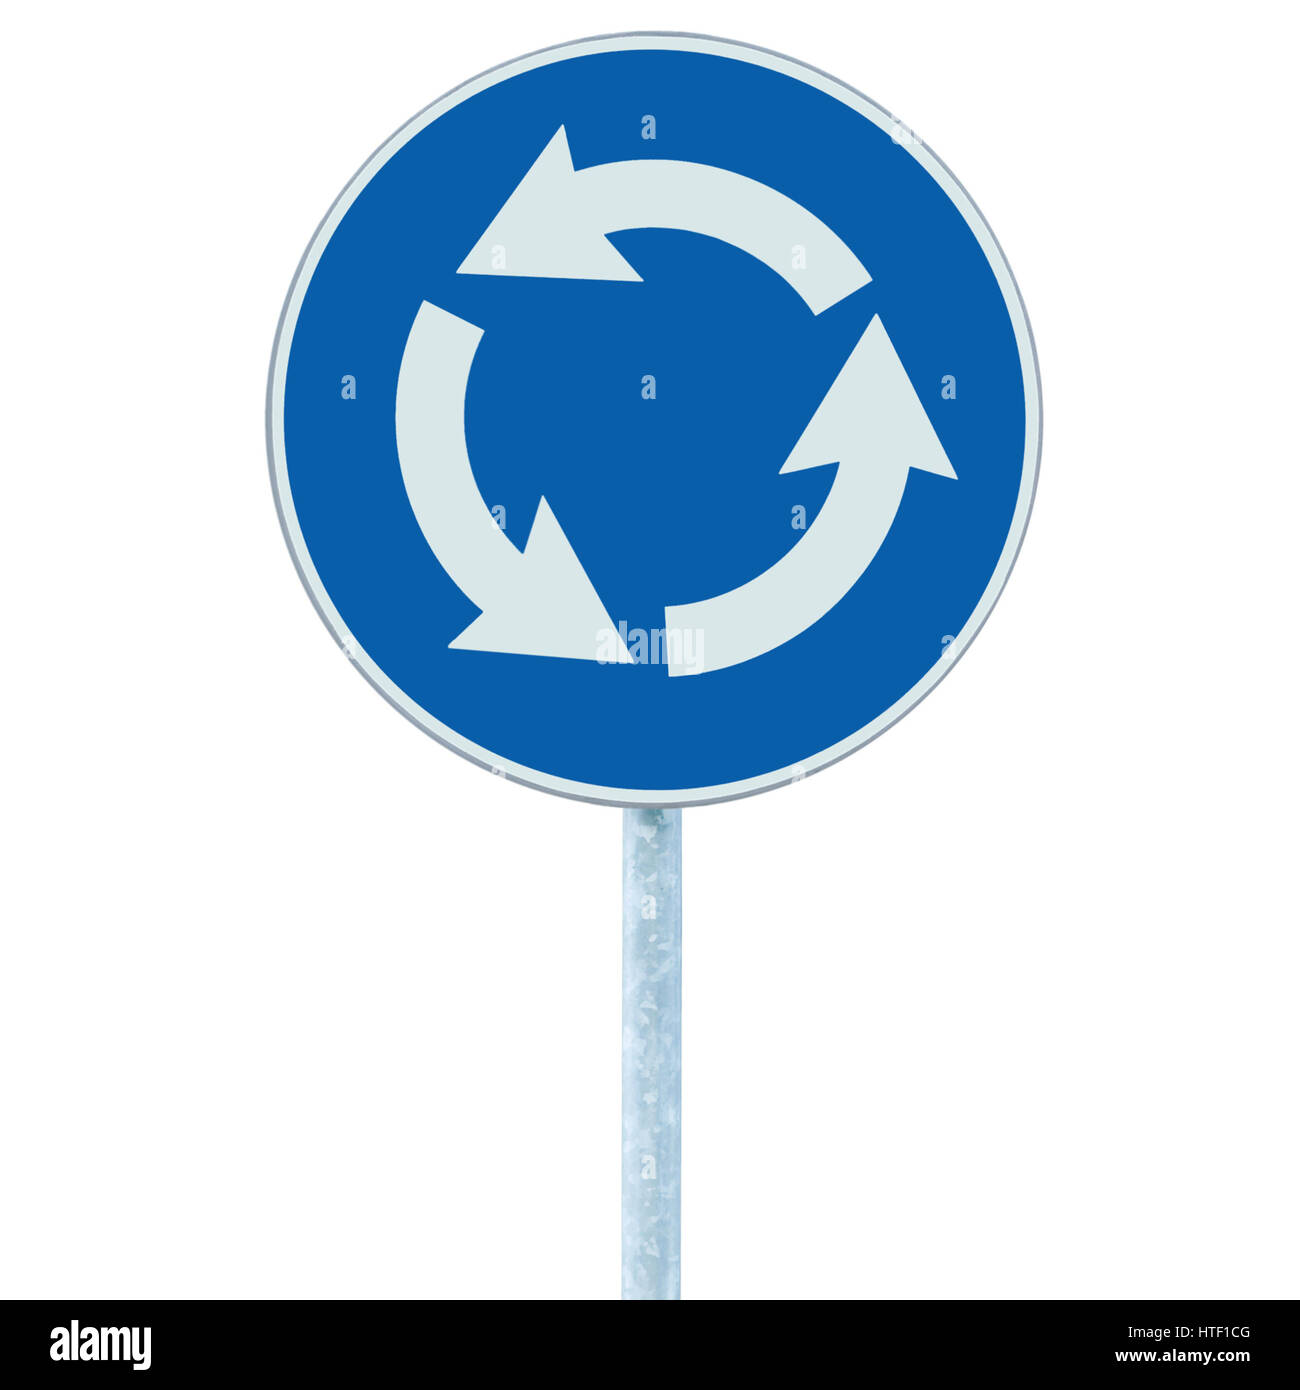 Rond-point de la route carrefour signe isolé, bleu, flèches blanches main droite Banque D'Images